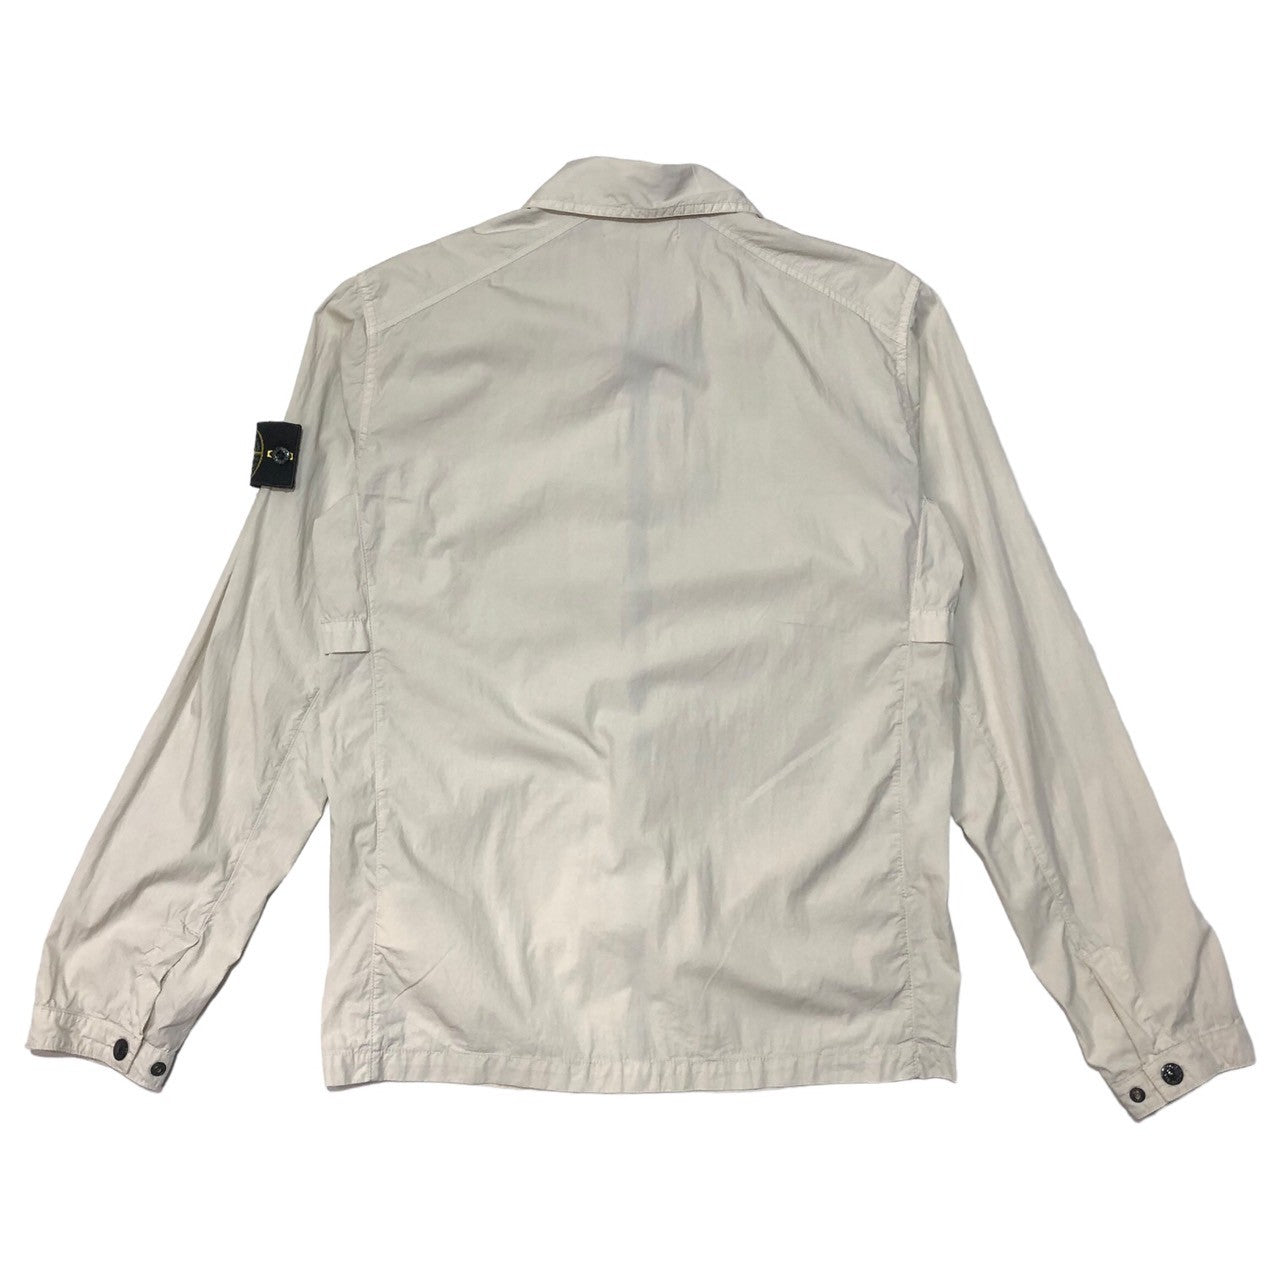 STONE ISLAND(ストーンアイランド) over shirt jacket オーバーシャツ ジャケット 581510220 S アイボリー